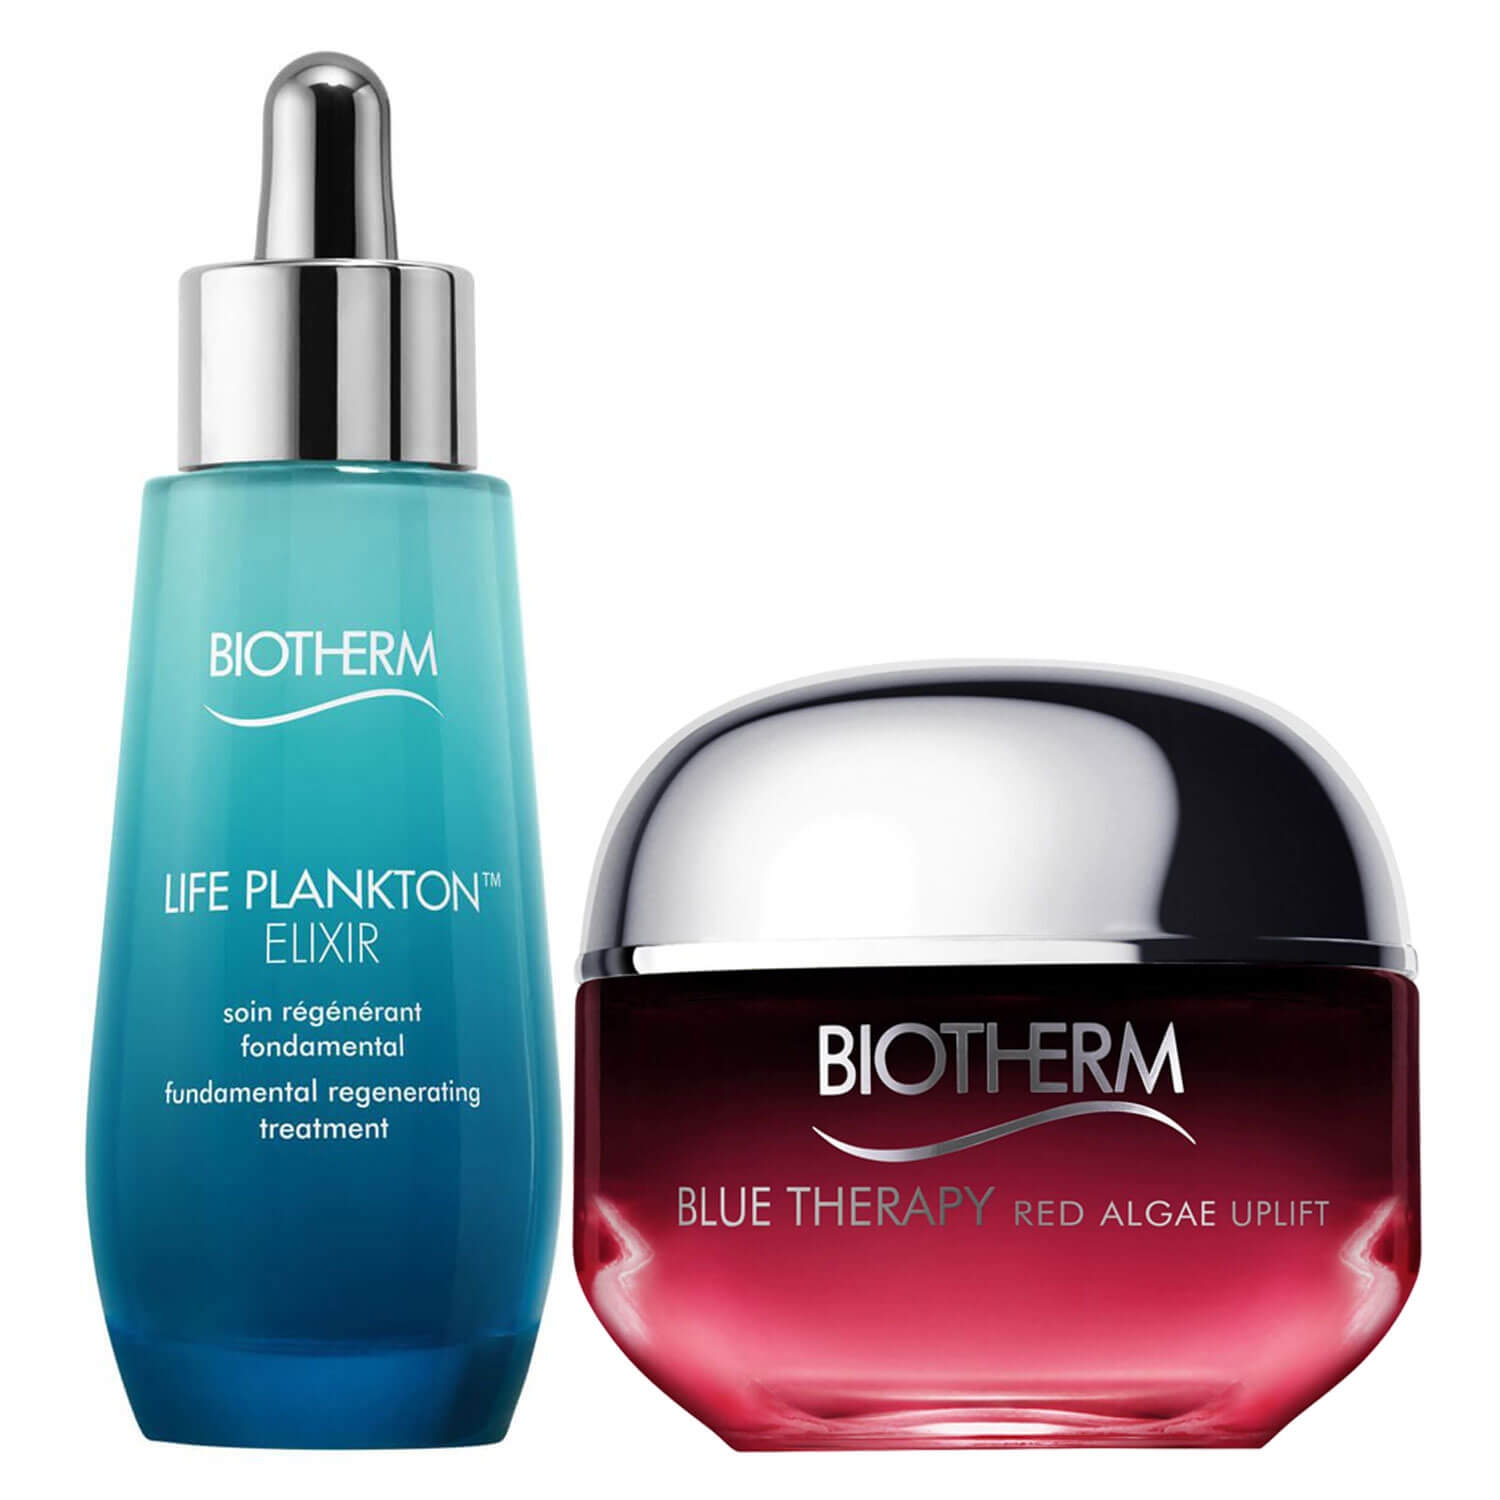 Produktbild von Biotherm Specials - Life Plankton Elixir & Blue Therapy Red Algae Uplift